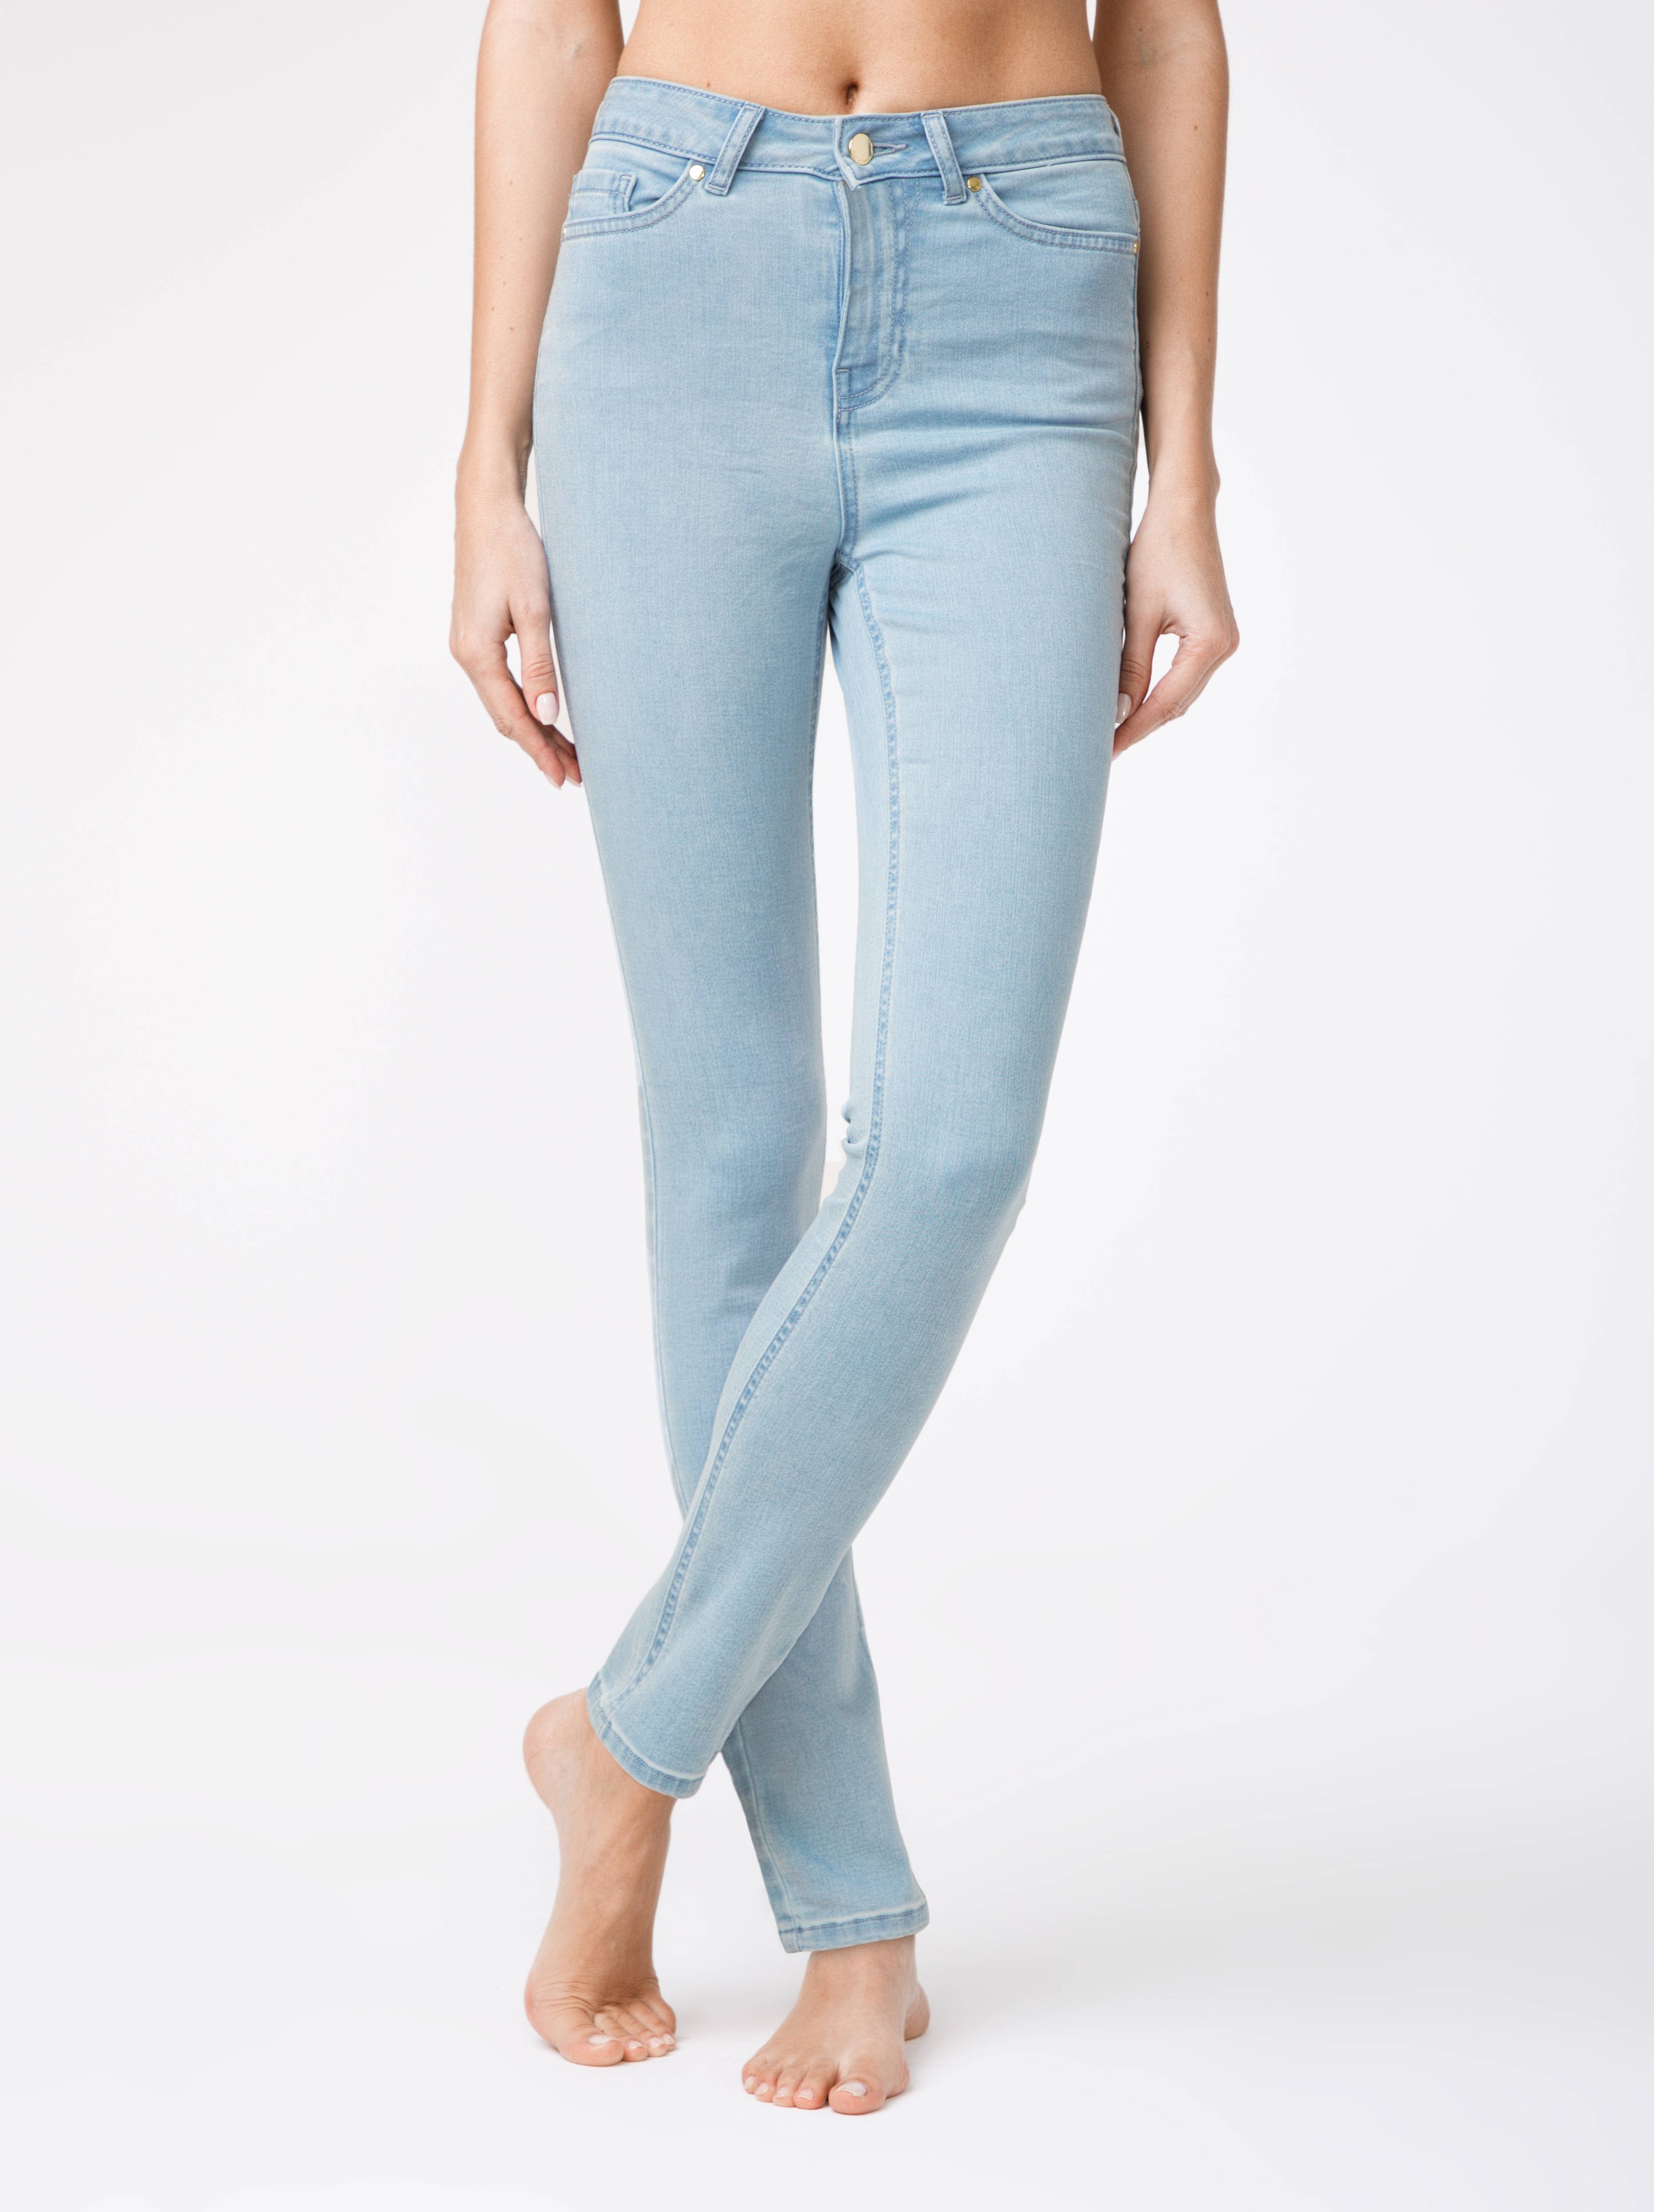 Eco-friendly джинсы зауженного кроя с высокой посадкой CON-115 Conte ⭐️, цвет bleach blue, размер 164-102 - фото 1